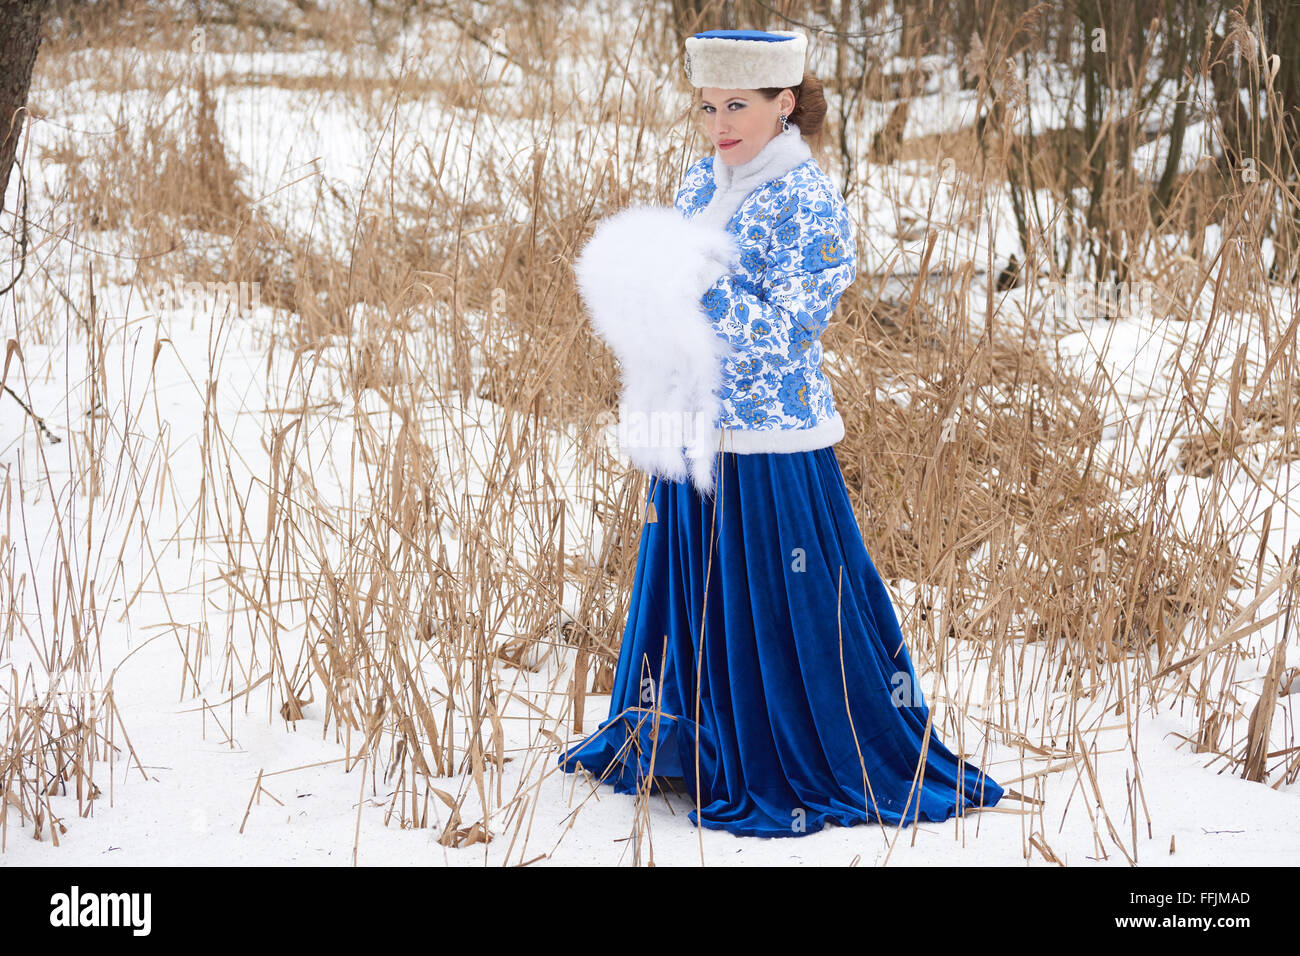 Jeune femme russe dans des vêtements traditionnels russes en hiver meadow Banque D'Images